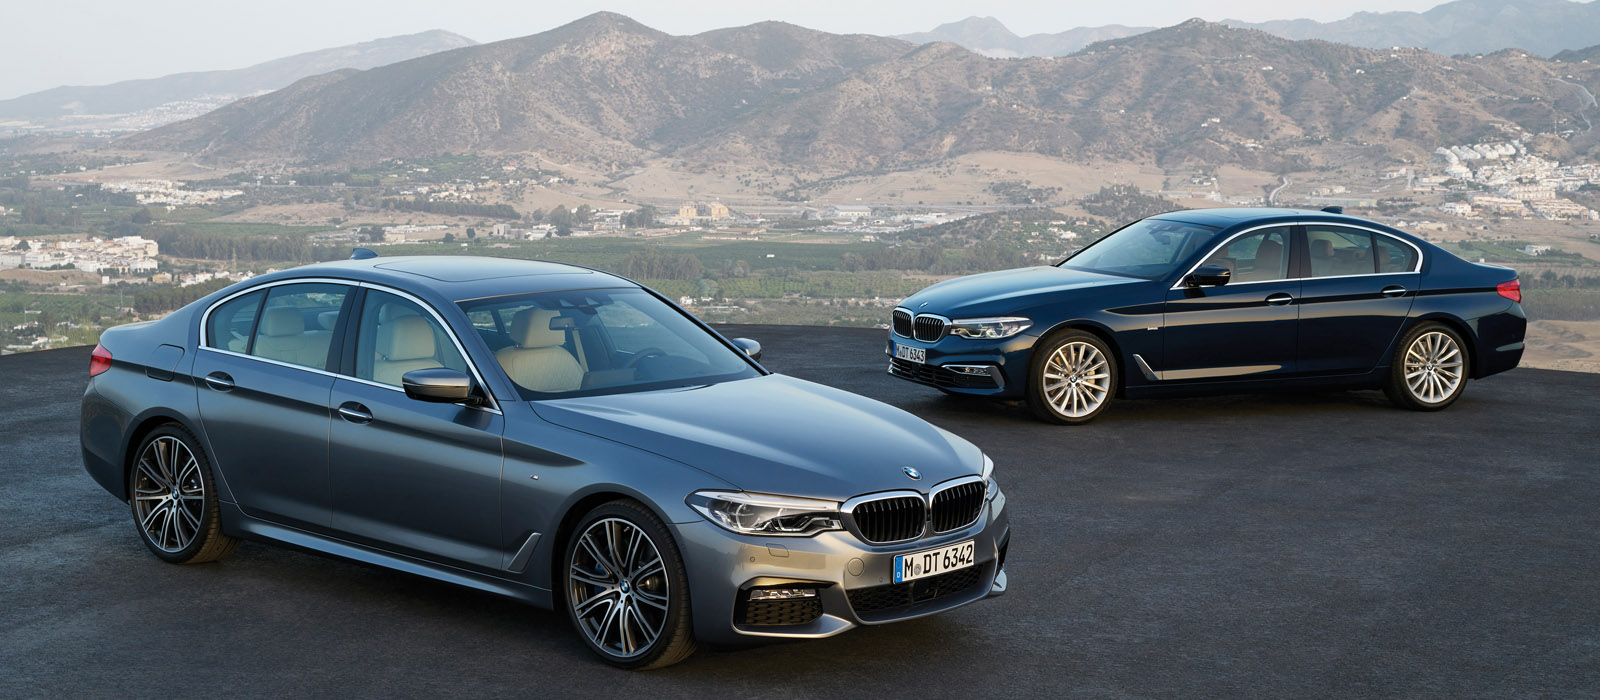 BMW 5 Series thế hệ mới: Tuyệt phẩm đến từ nước Đức 12